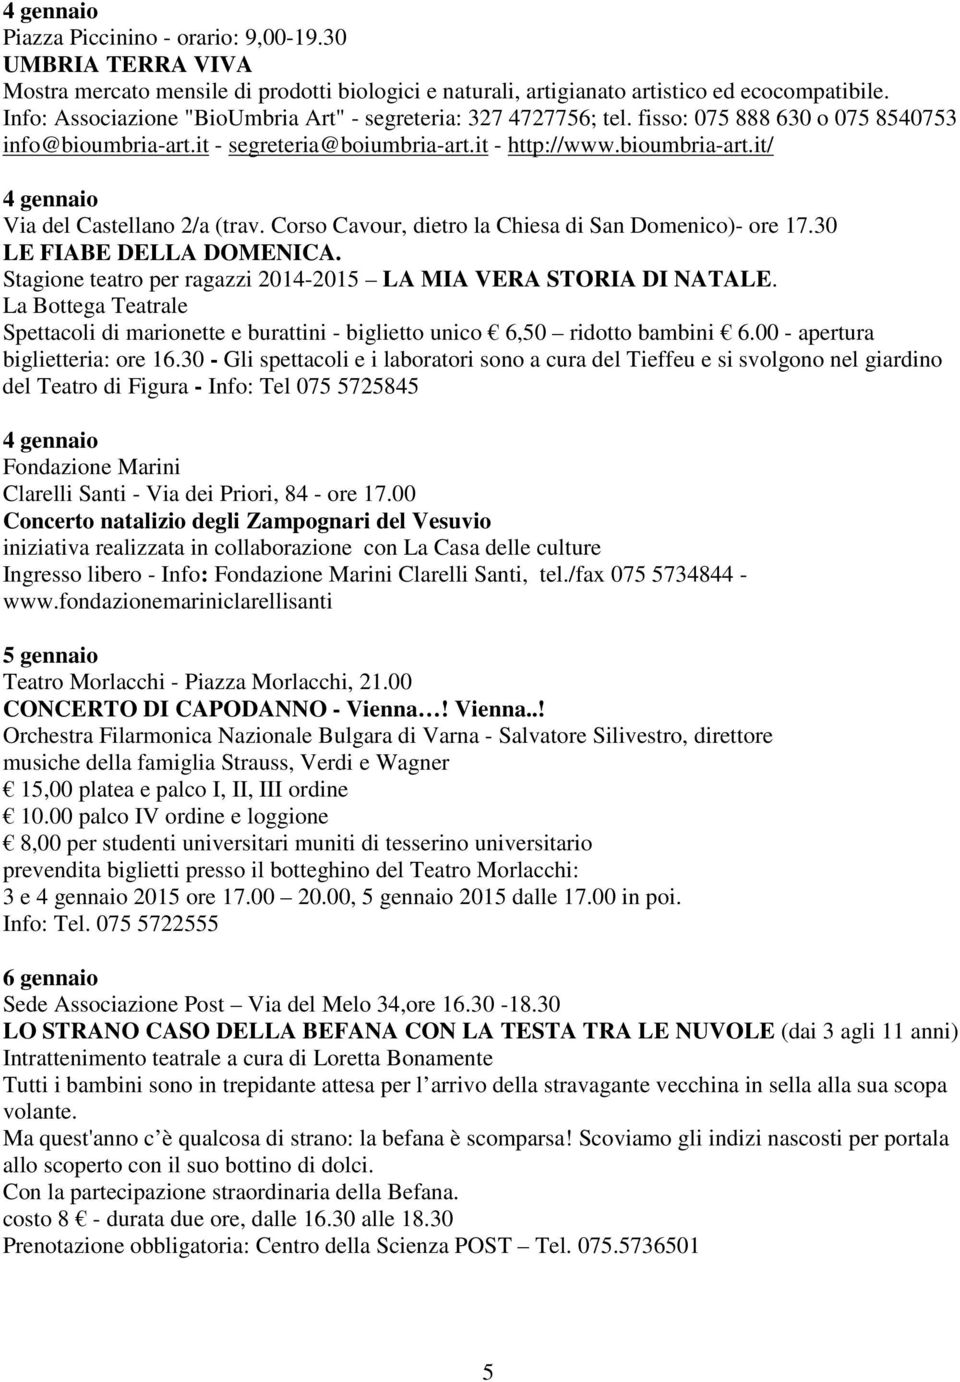 Corso Cavour, dietro la Chiesa di San Domenico)- ore 17.30 LE FIABE DELLA DOMENICA. Stagione teatro per ragazzi 2014-2015 LA MIA VERA STORIA DI NATALE.